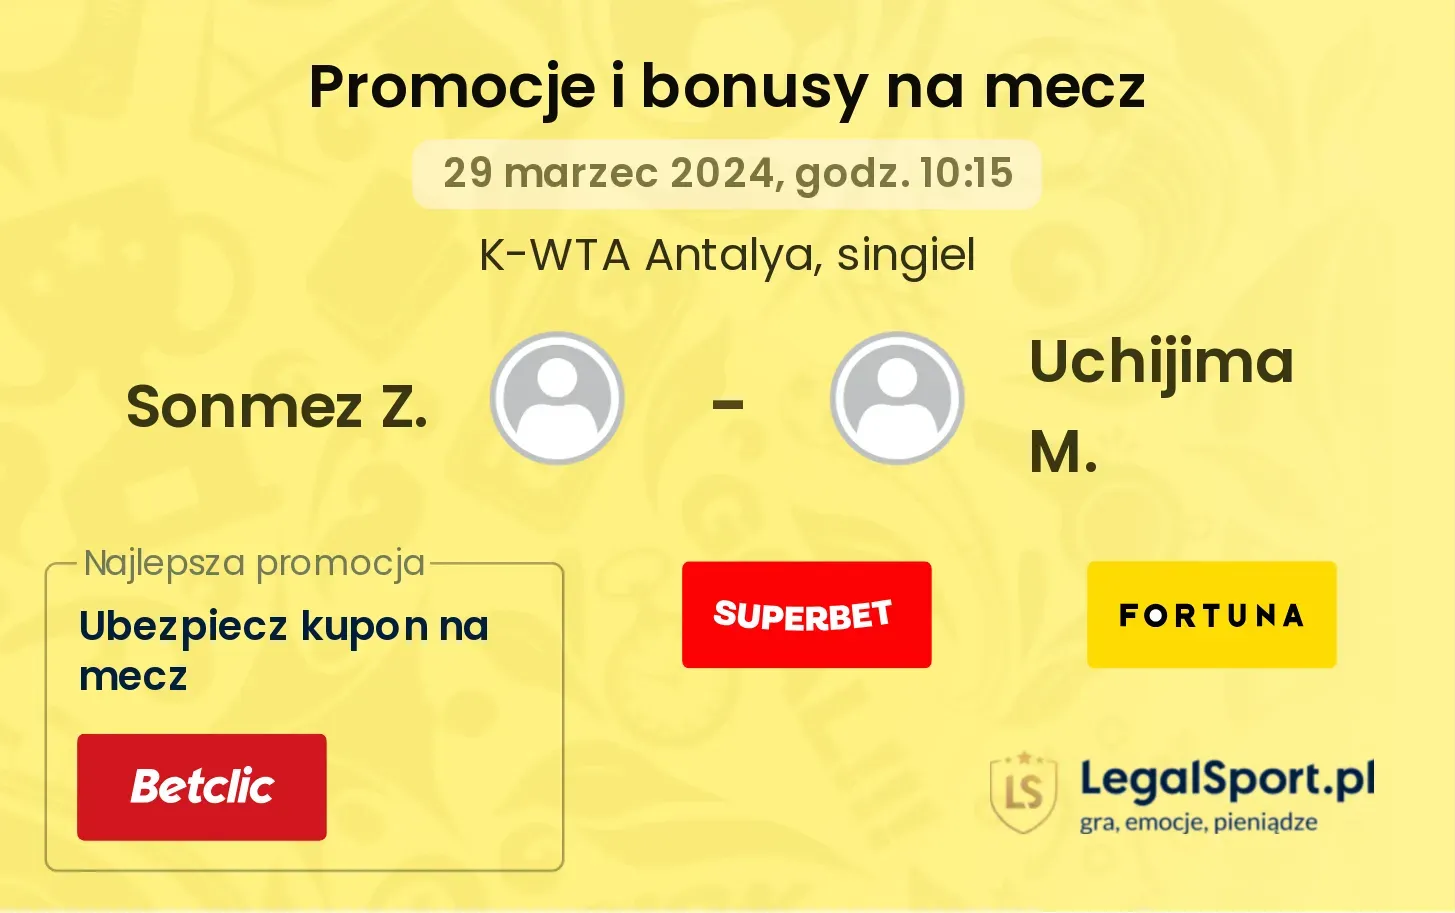 Sonmez Z. - Uchijima M. promocje bonusy na mecz